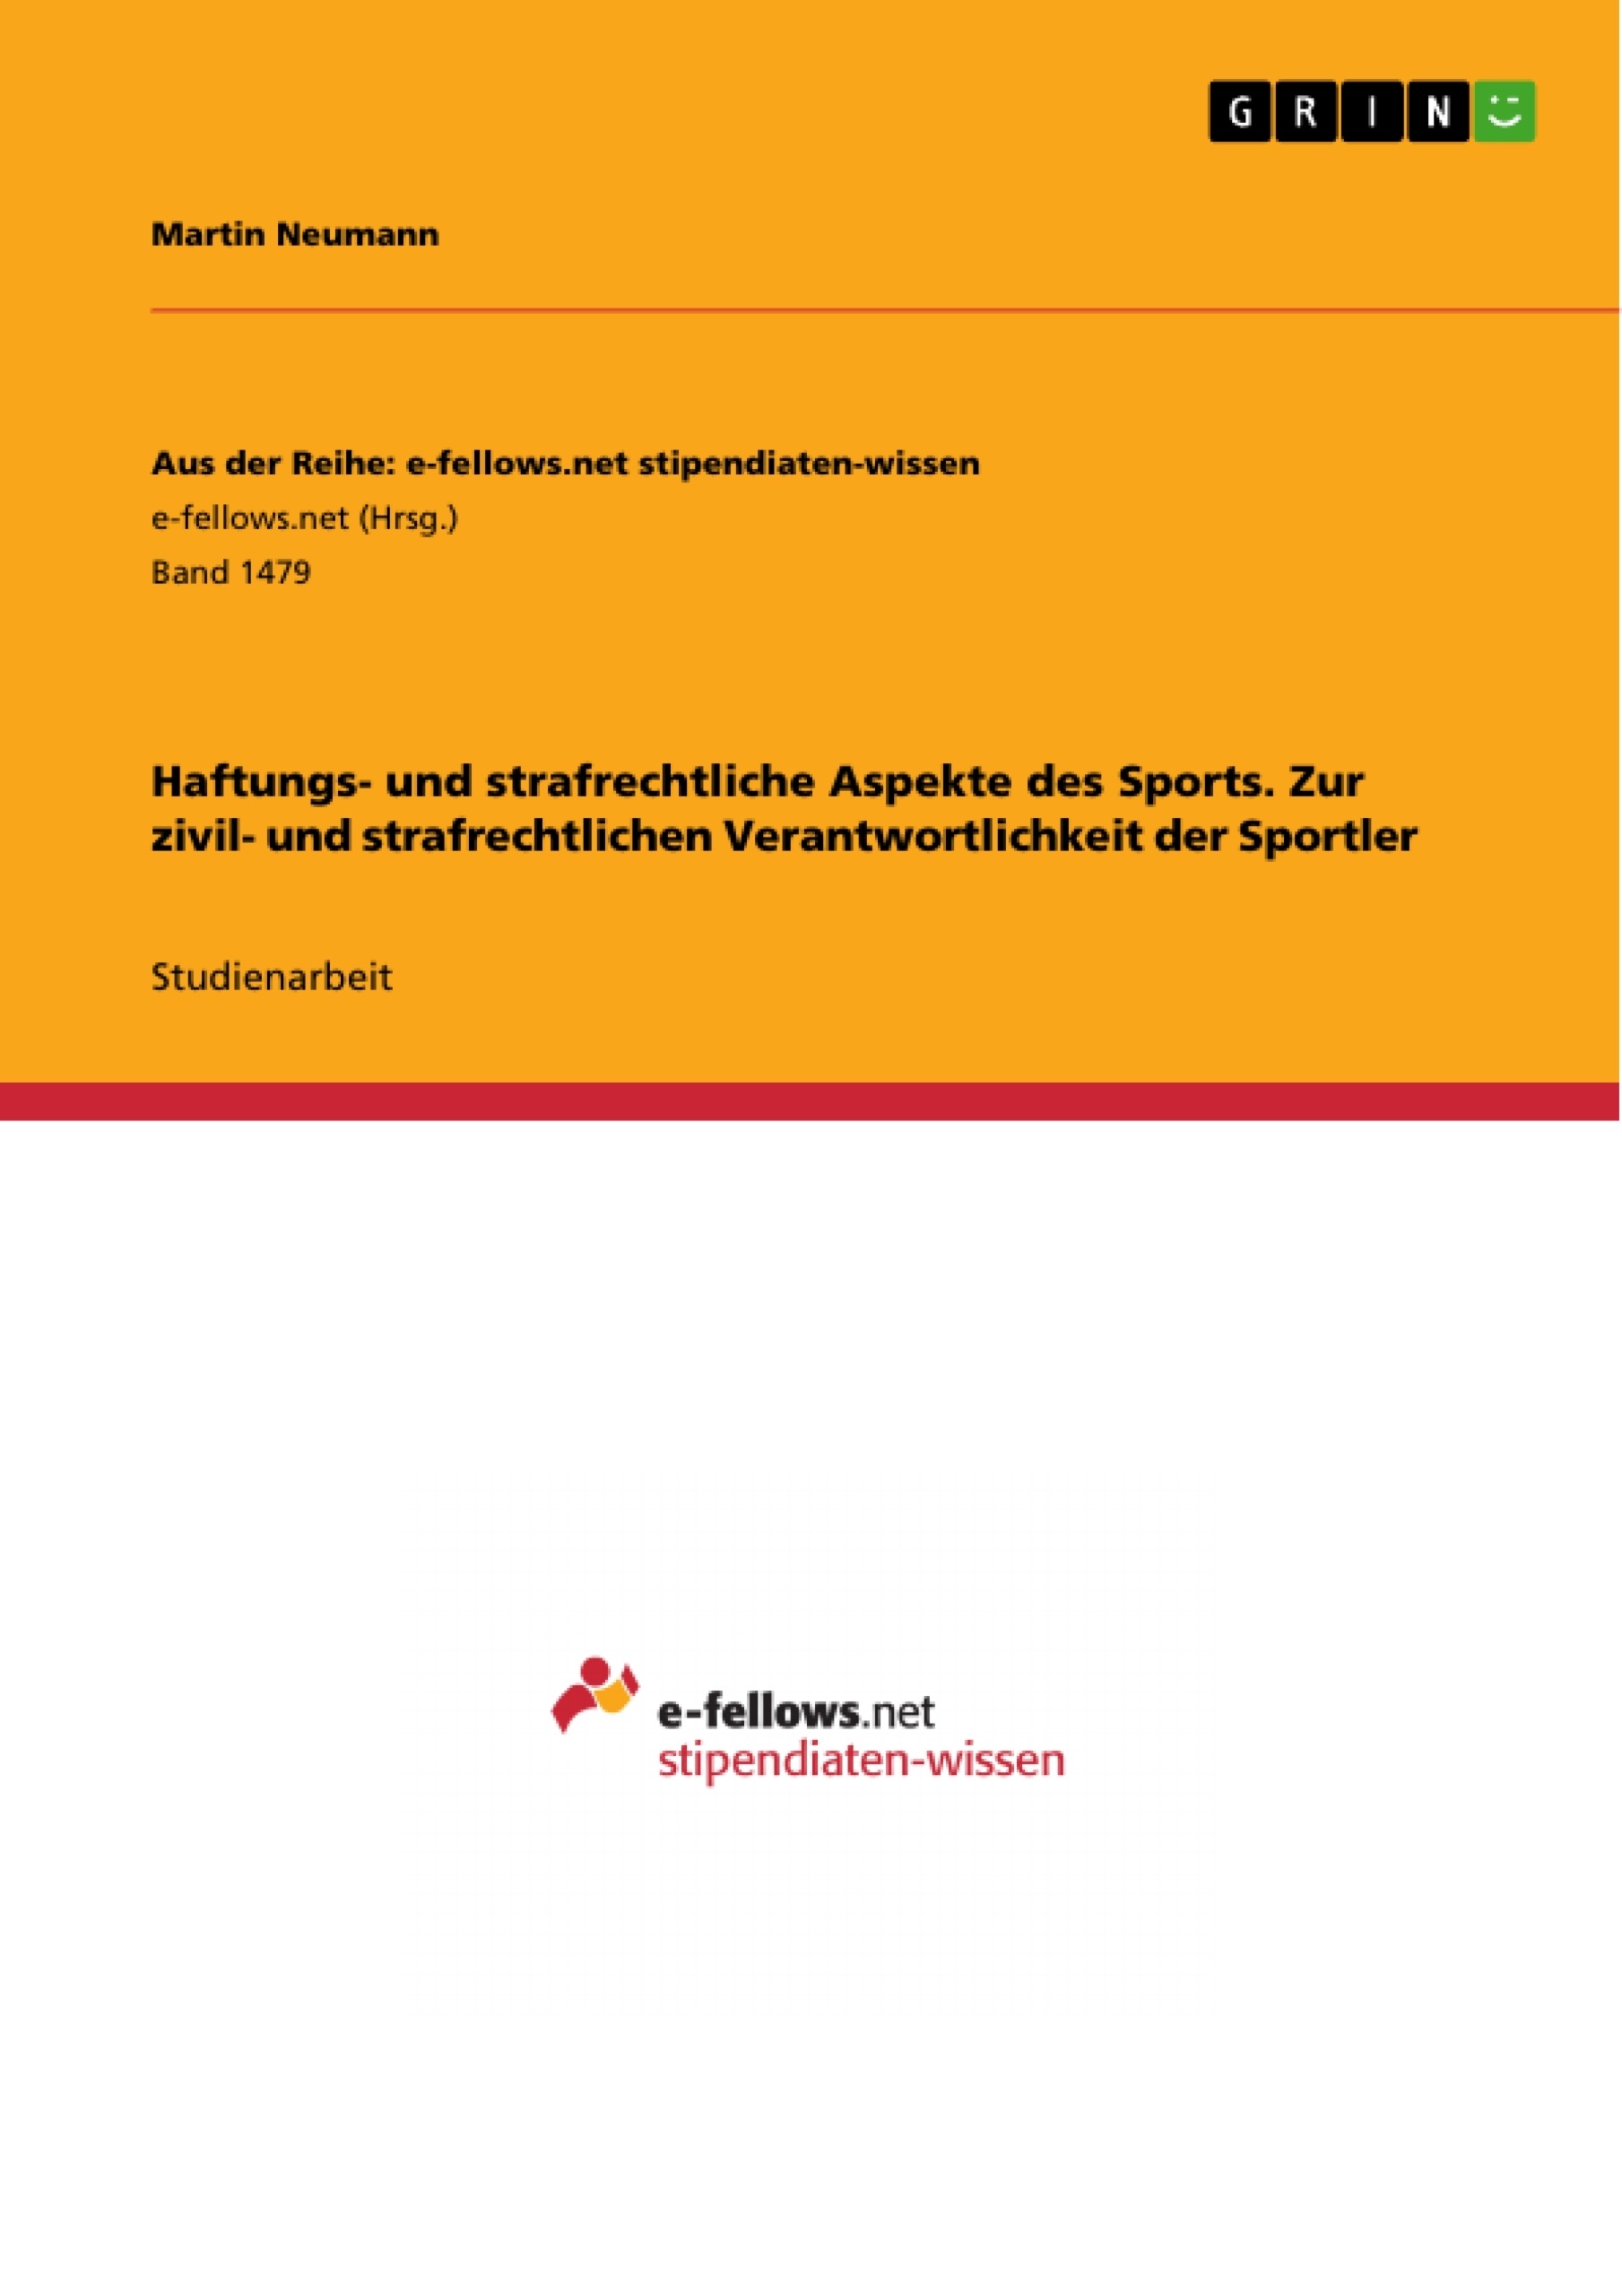 Title: Haftungs- und strafrechtliche Aspekte des Sports. Zur zivil- und strafrechtlichen Verantwortlichkeit der Sportler